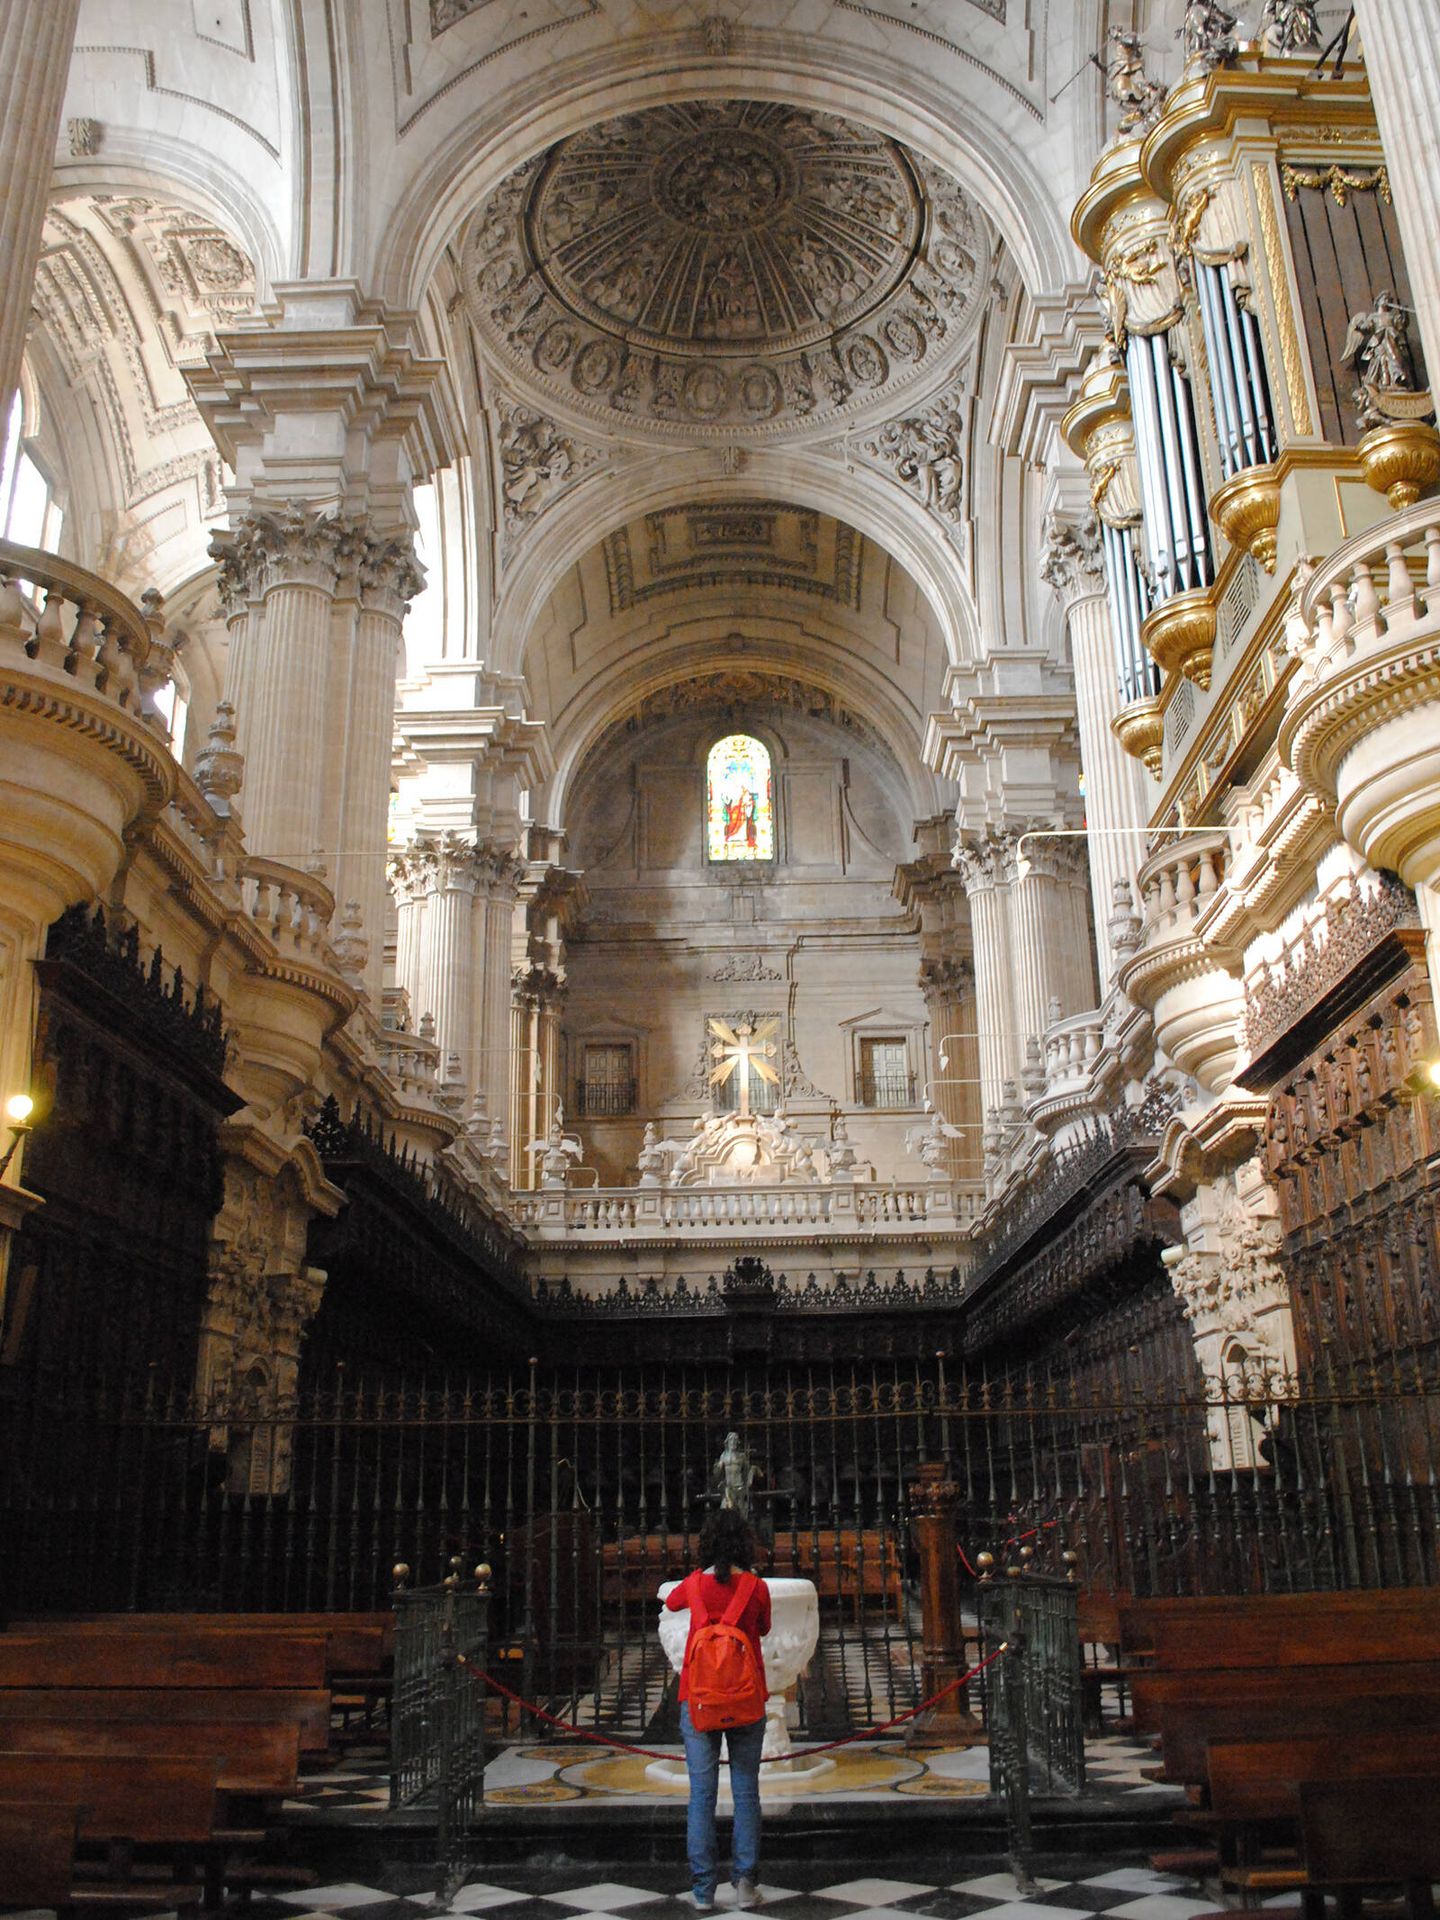 Bóveda de la catedral de Jaén. (Wikimedia Commons/Cristina Jiménez Ledesma)